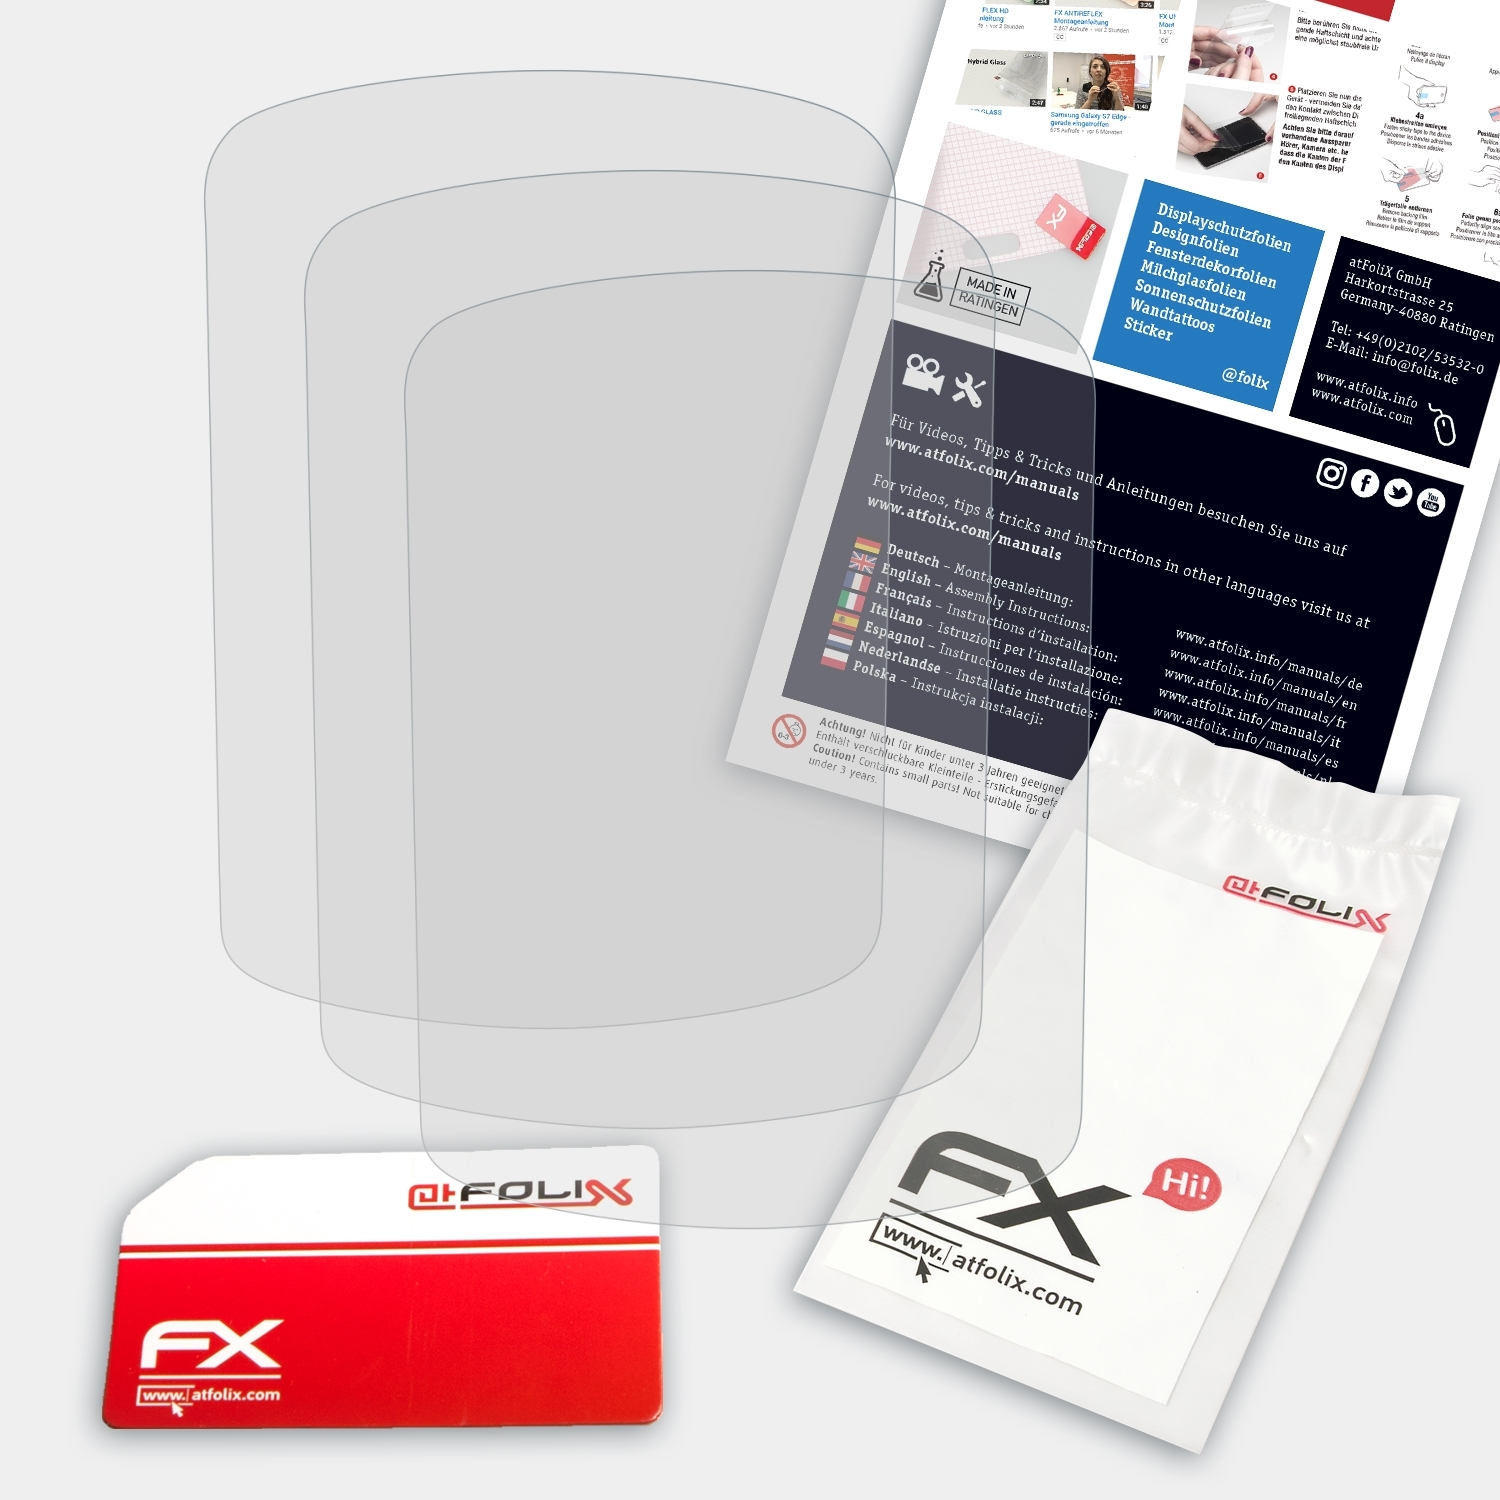 Venture HC) ATFOLIX Displayschutz(für Garmin FX-Antireflex Etrex 3x